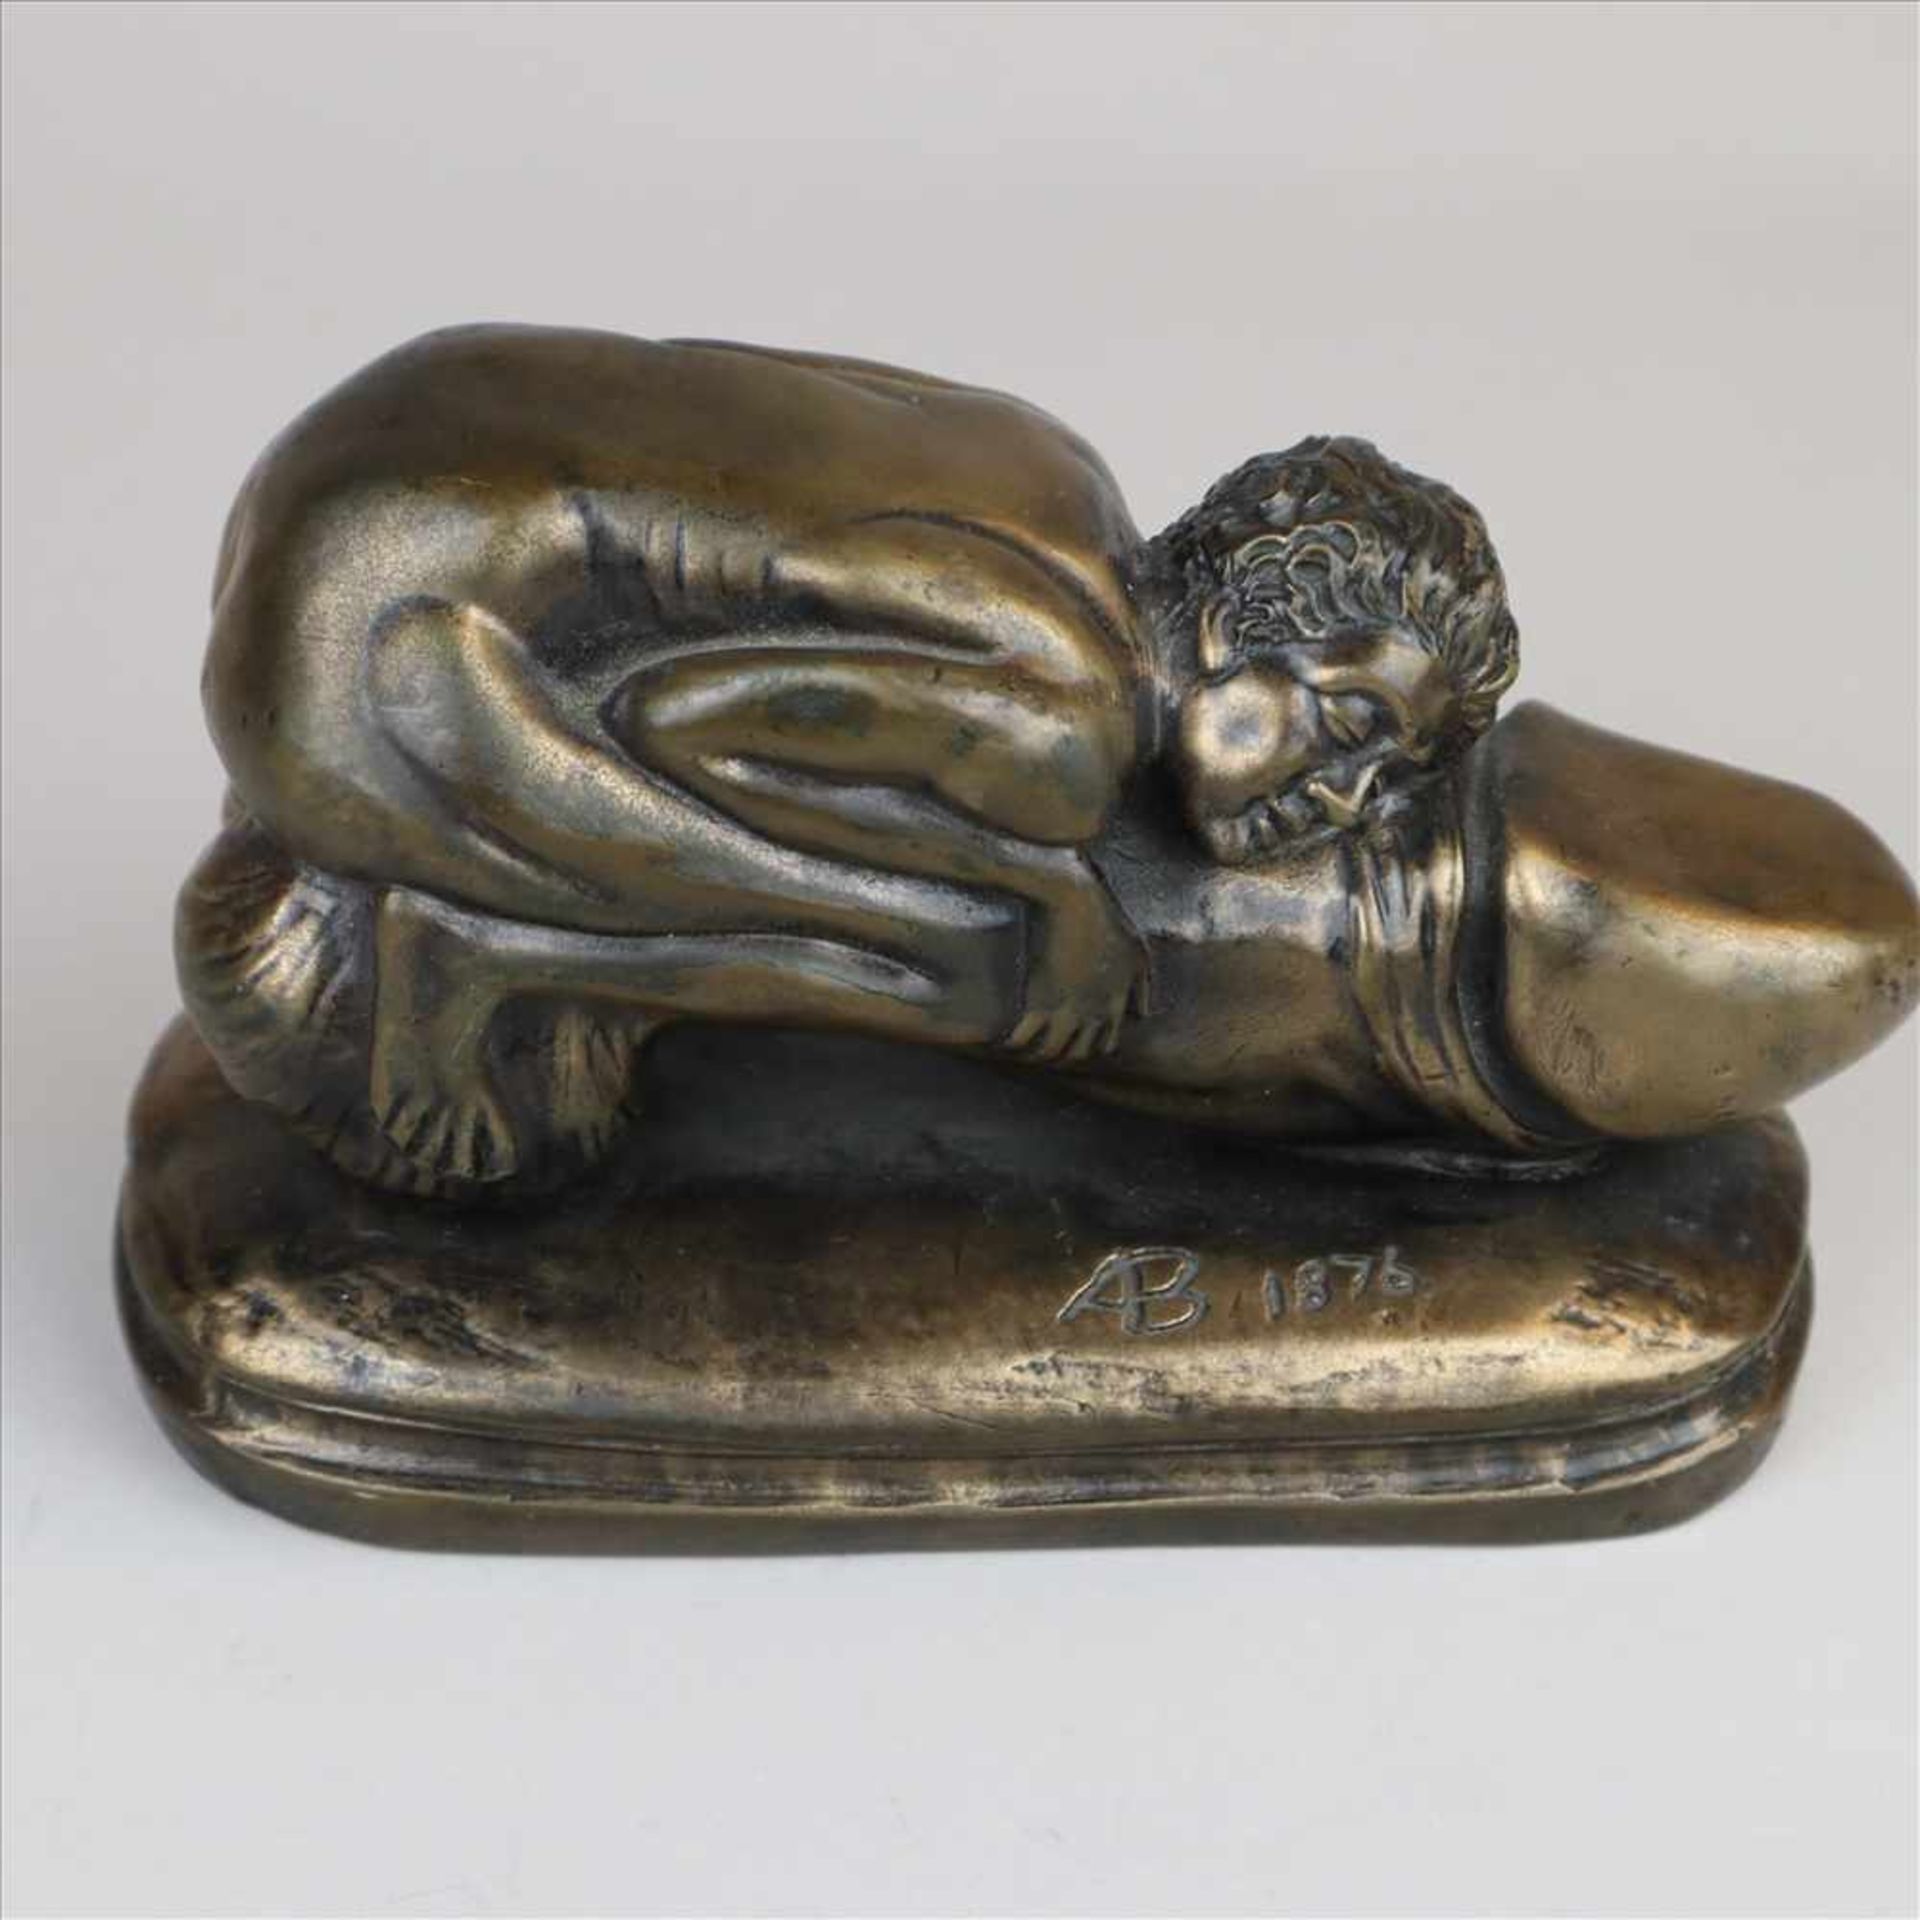 Erotische Bronzefigur - Die Umarmung,Bronze braun patiniert, auf dem Sockel vertieft monogrammiert